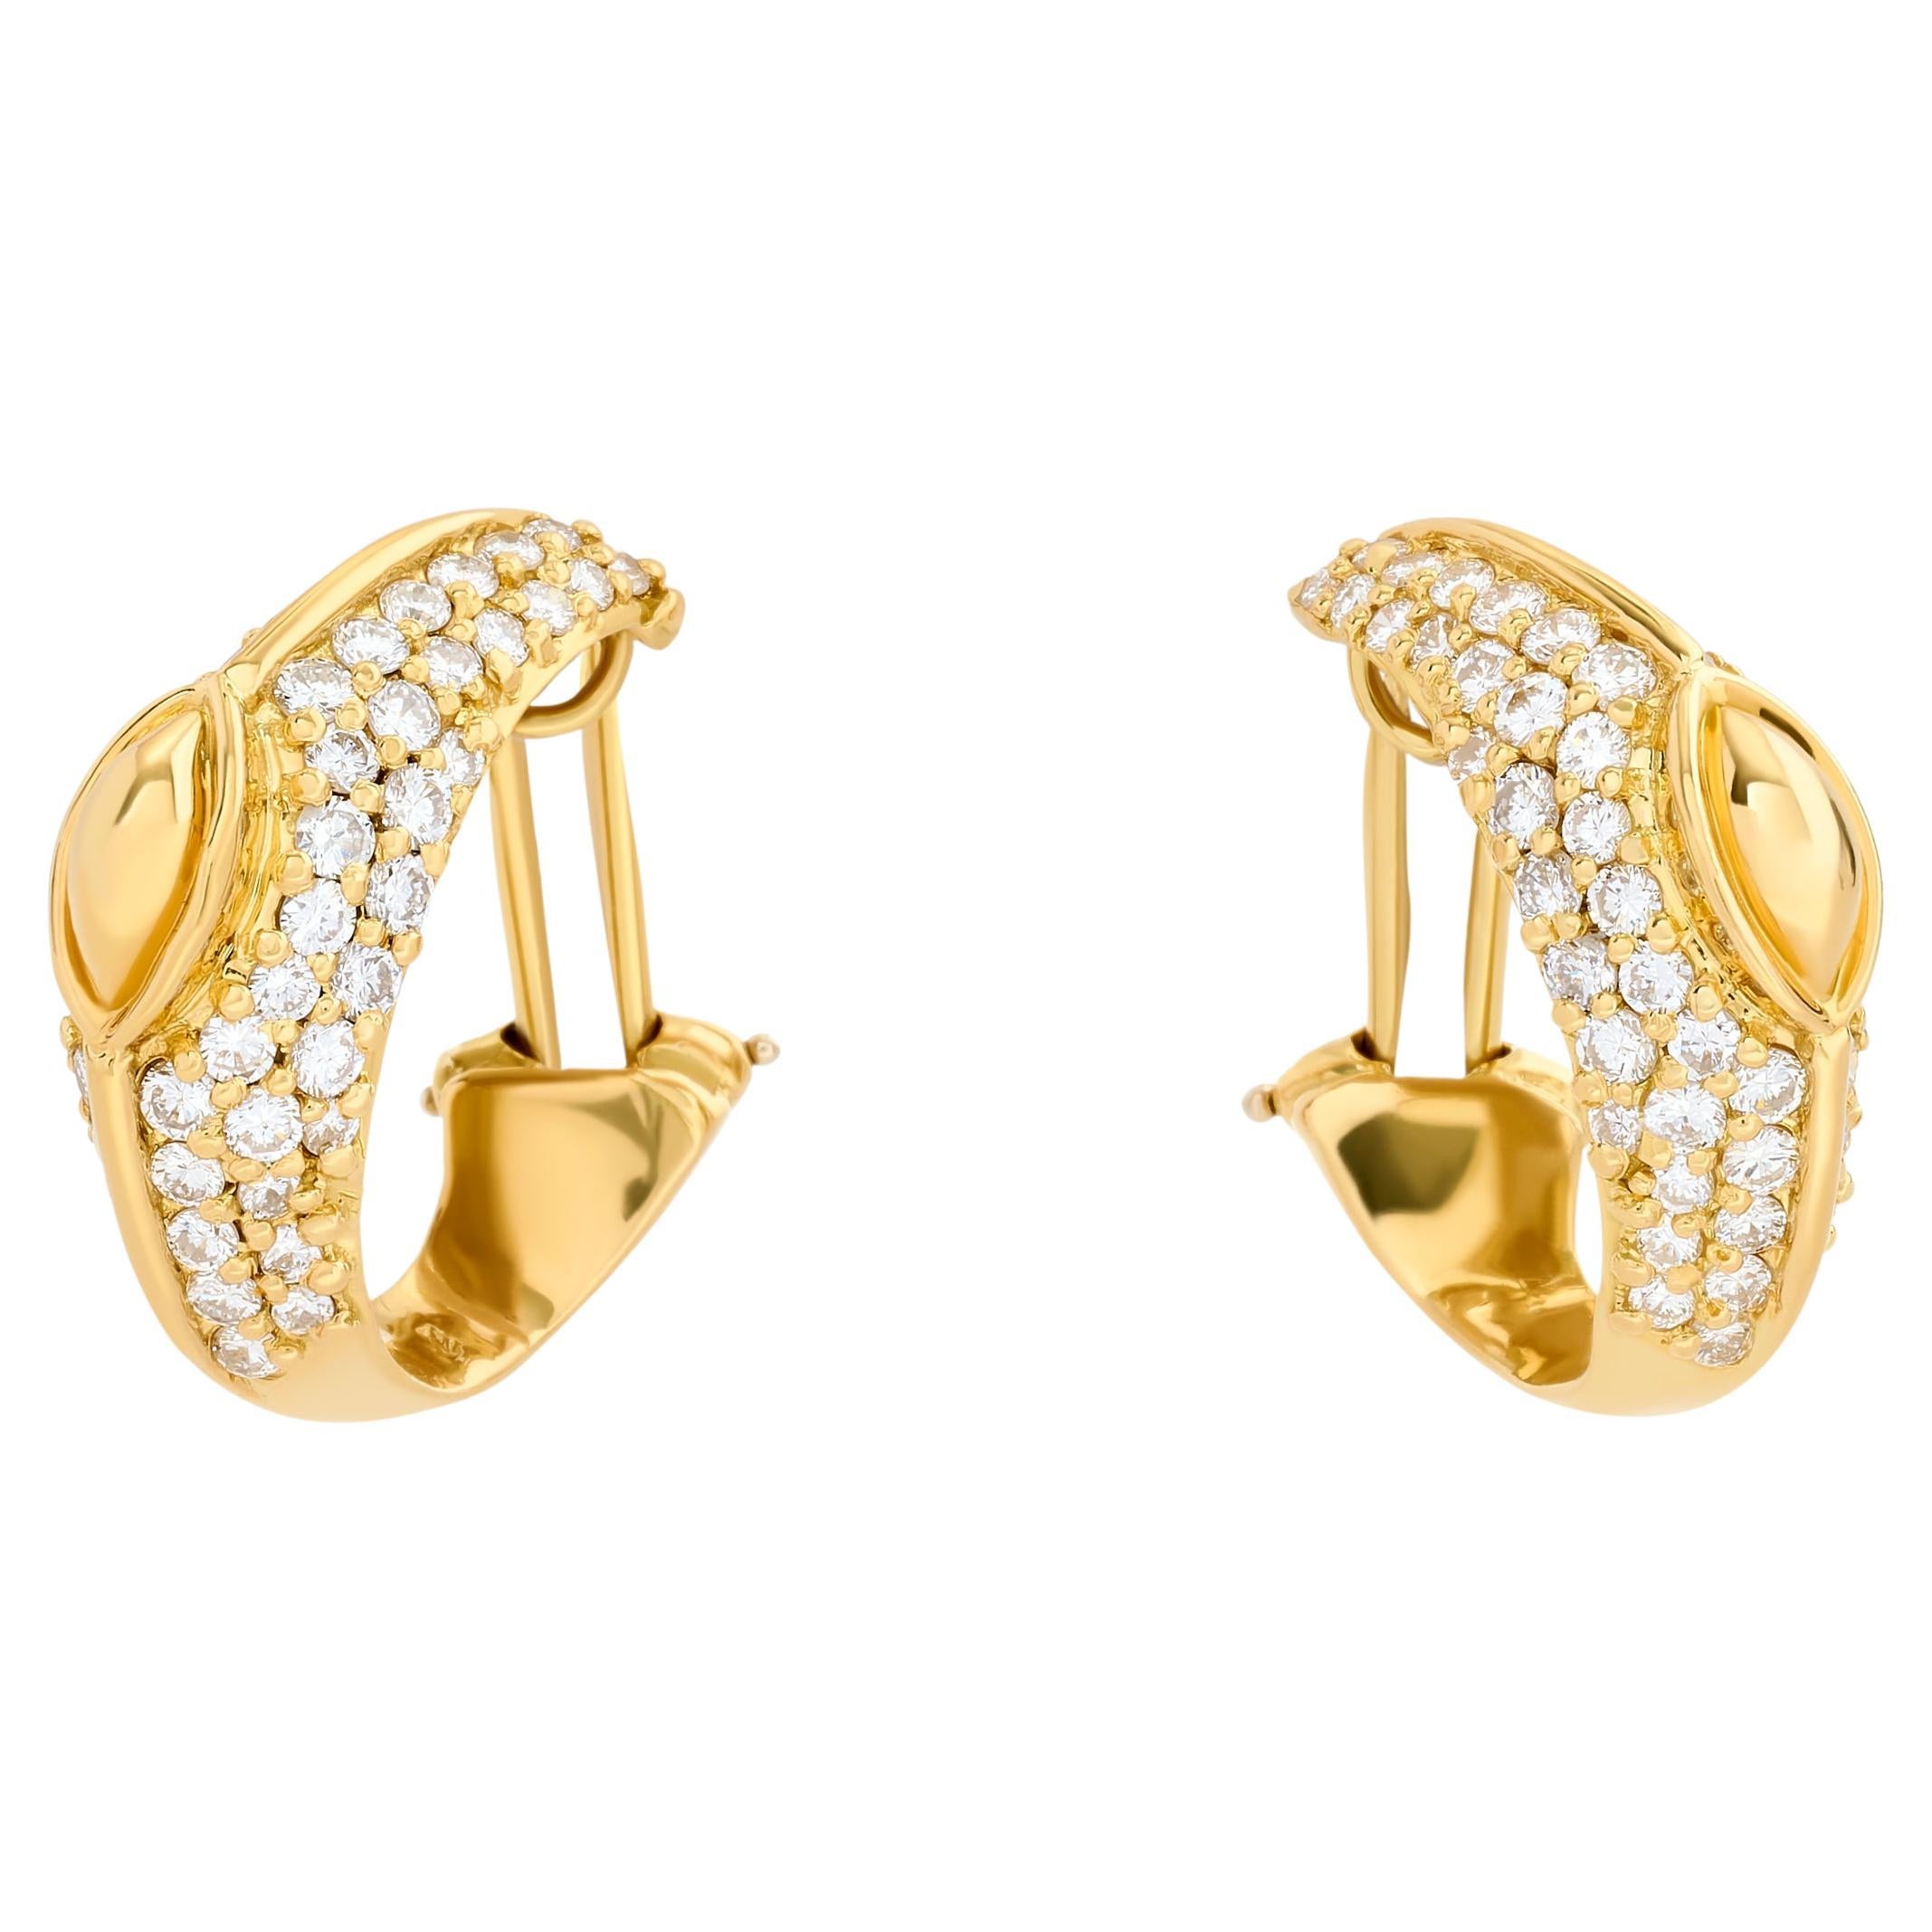 Hammerman Brothers Ohrringe aus 18 Karat Gelbgold mit Diamanten